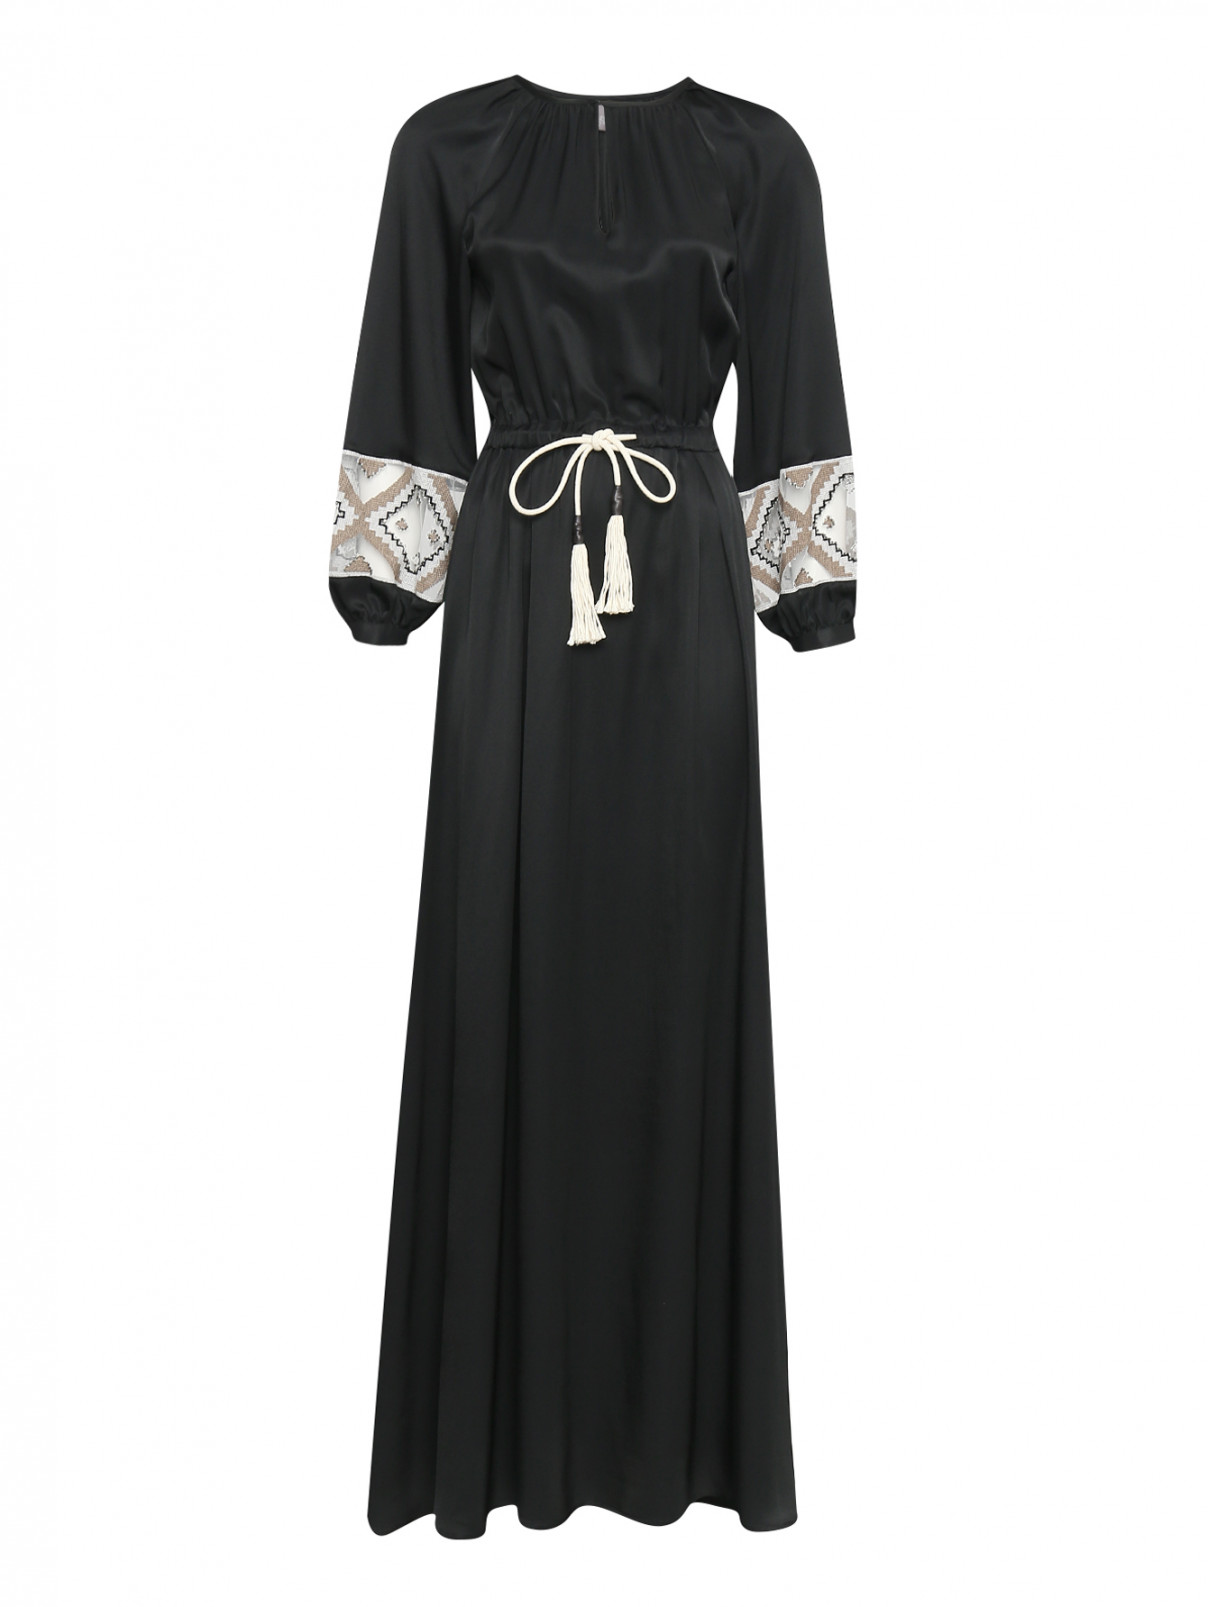 Платье-макси с декоративной отделкой на рукавах Lorena Antoniazzi  –  Общий вид  – Цвет:  Черный